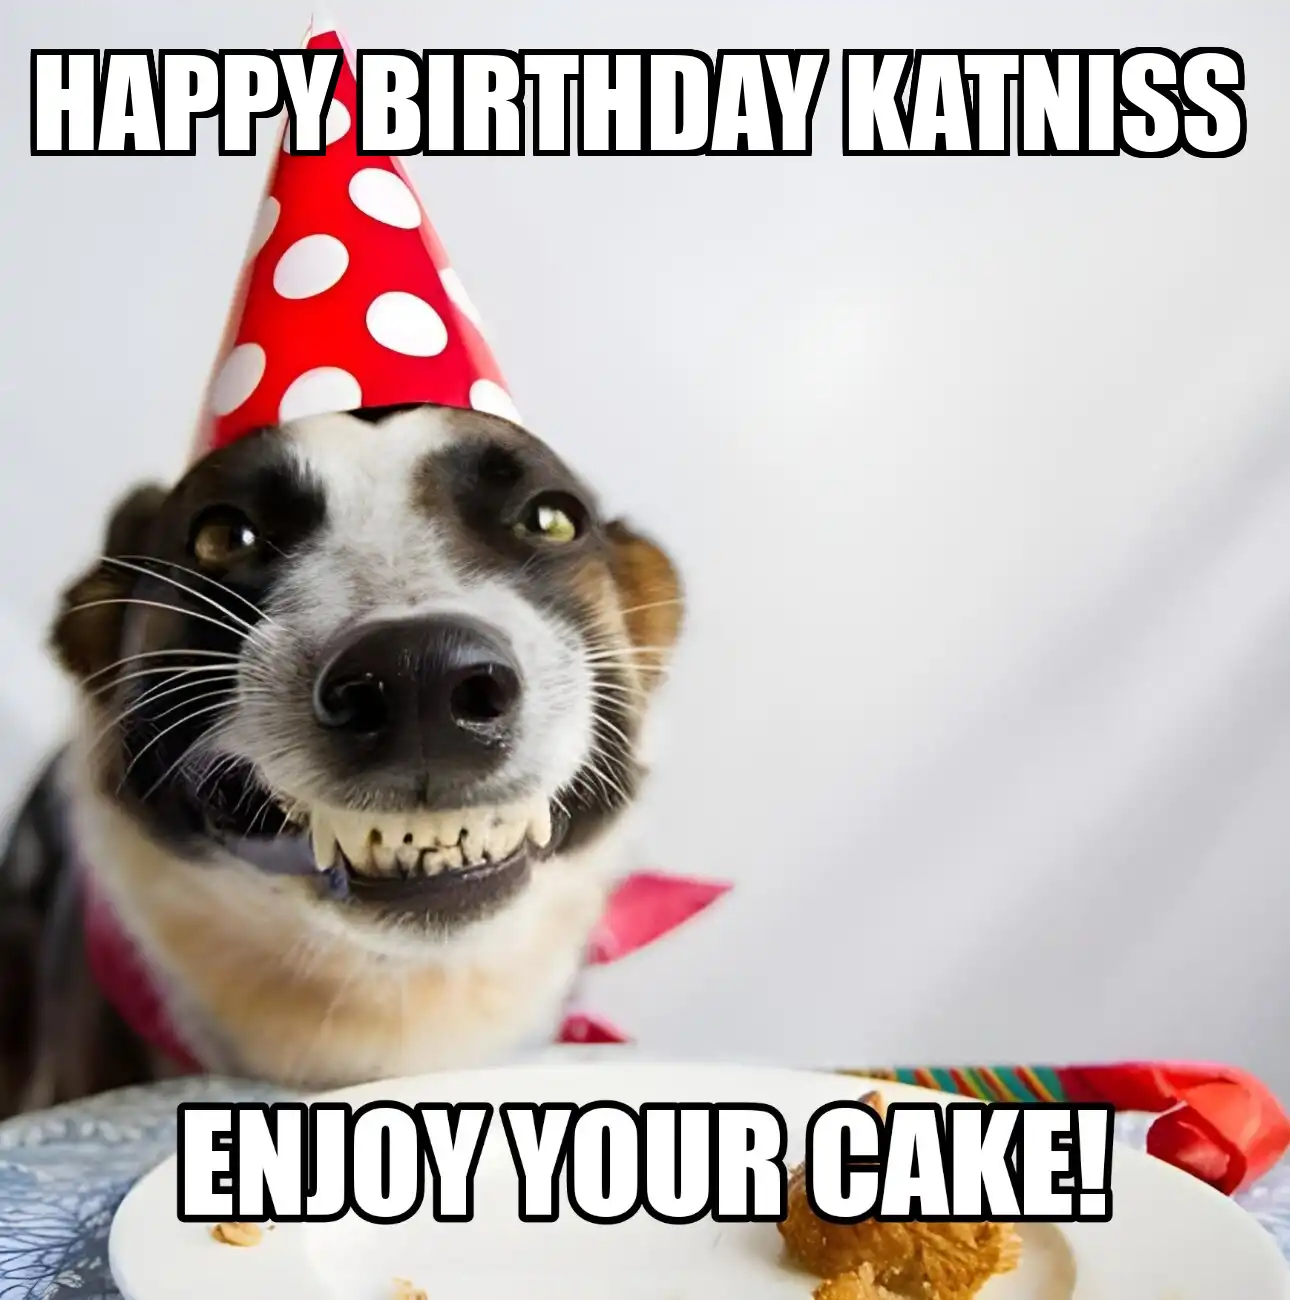 Happy Birthday Katniss Enjoy Your Cake Dog Meme